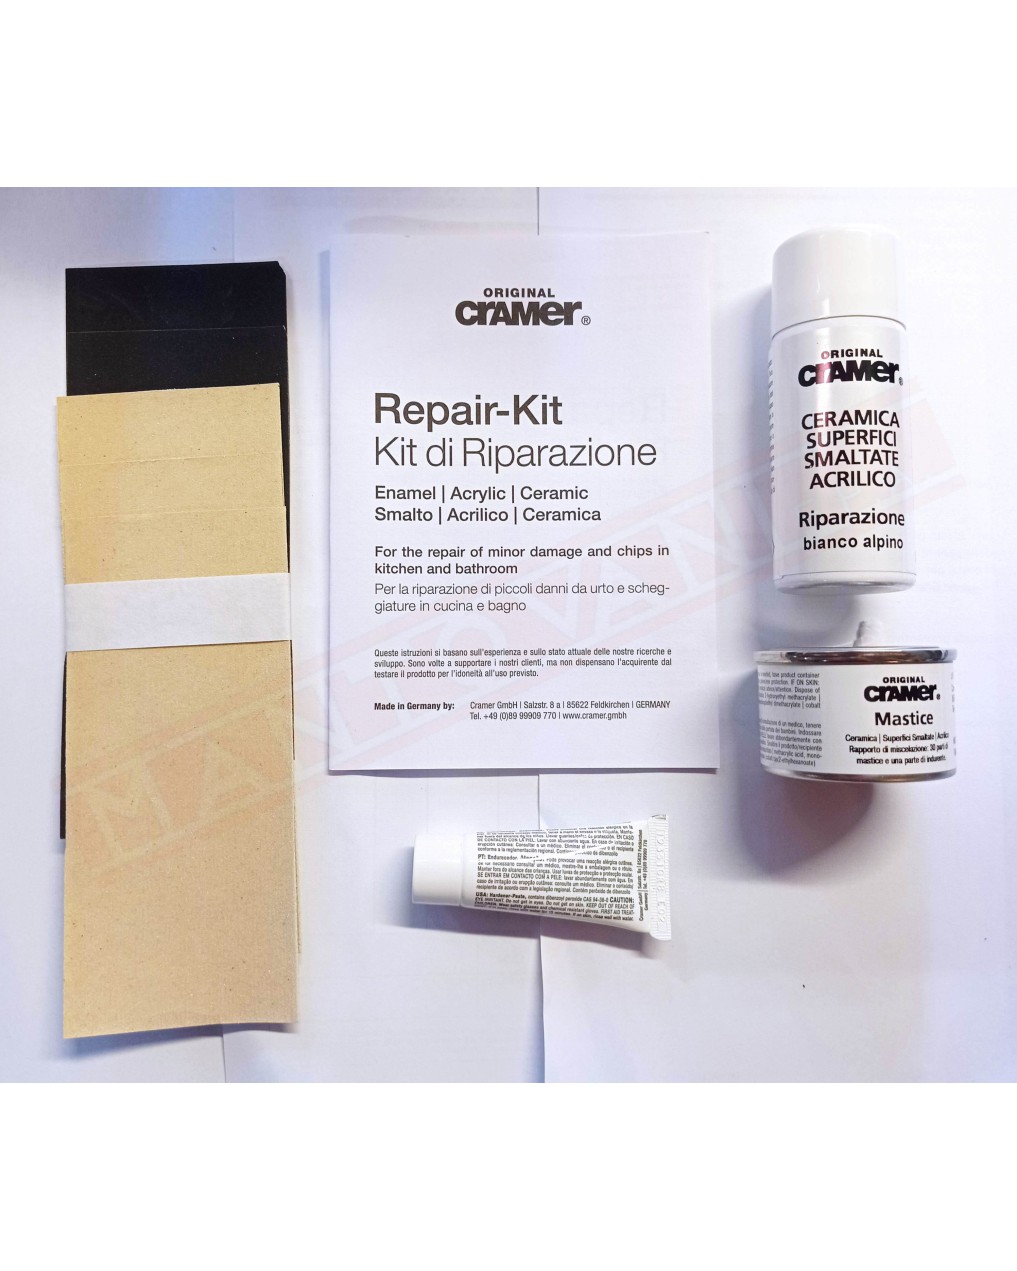 Kit riparazione per sanitari prodotto bicomponenete opaco con spray di vernice bianca lucida come finitura